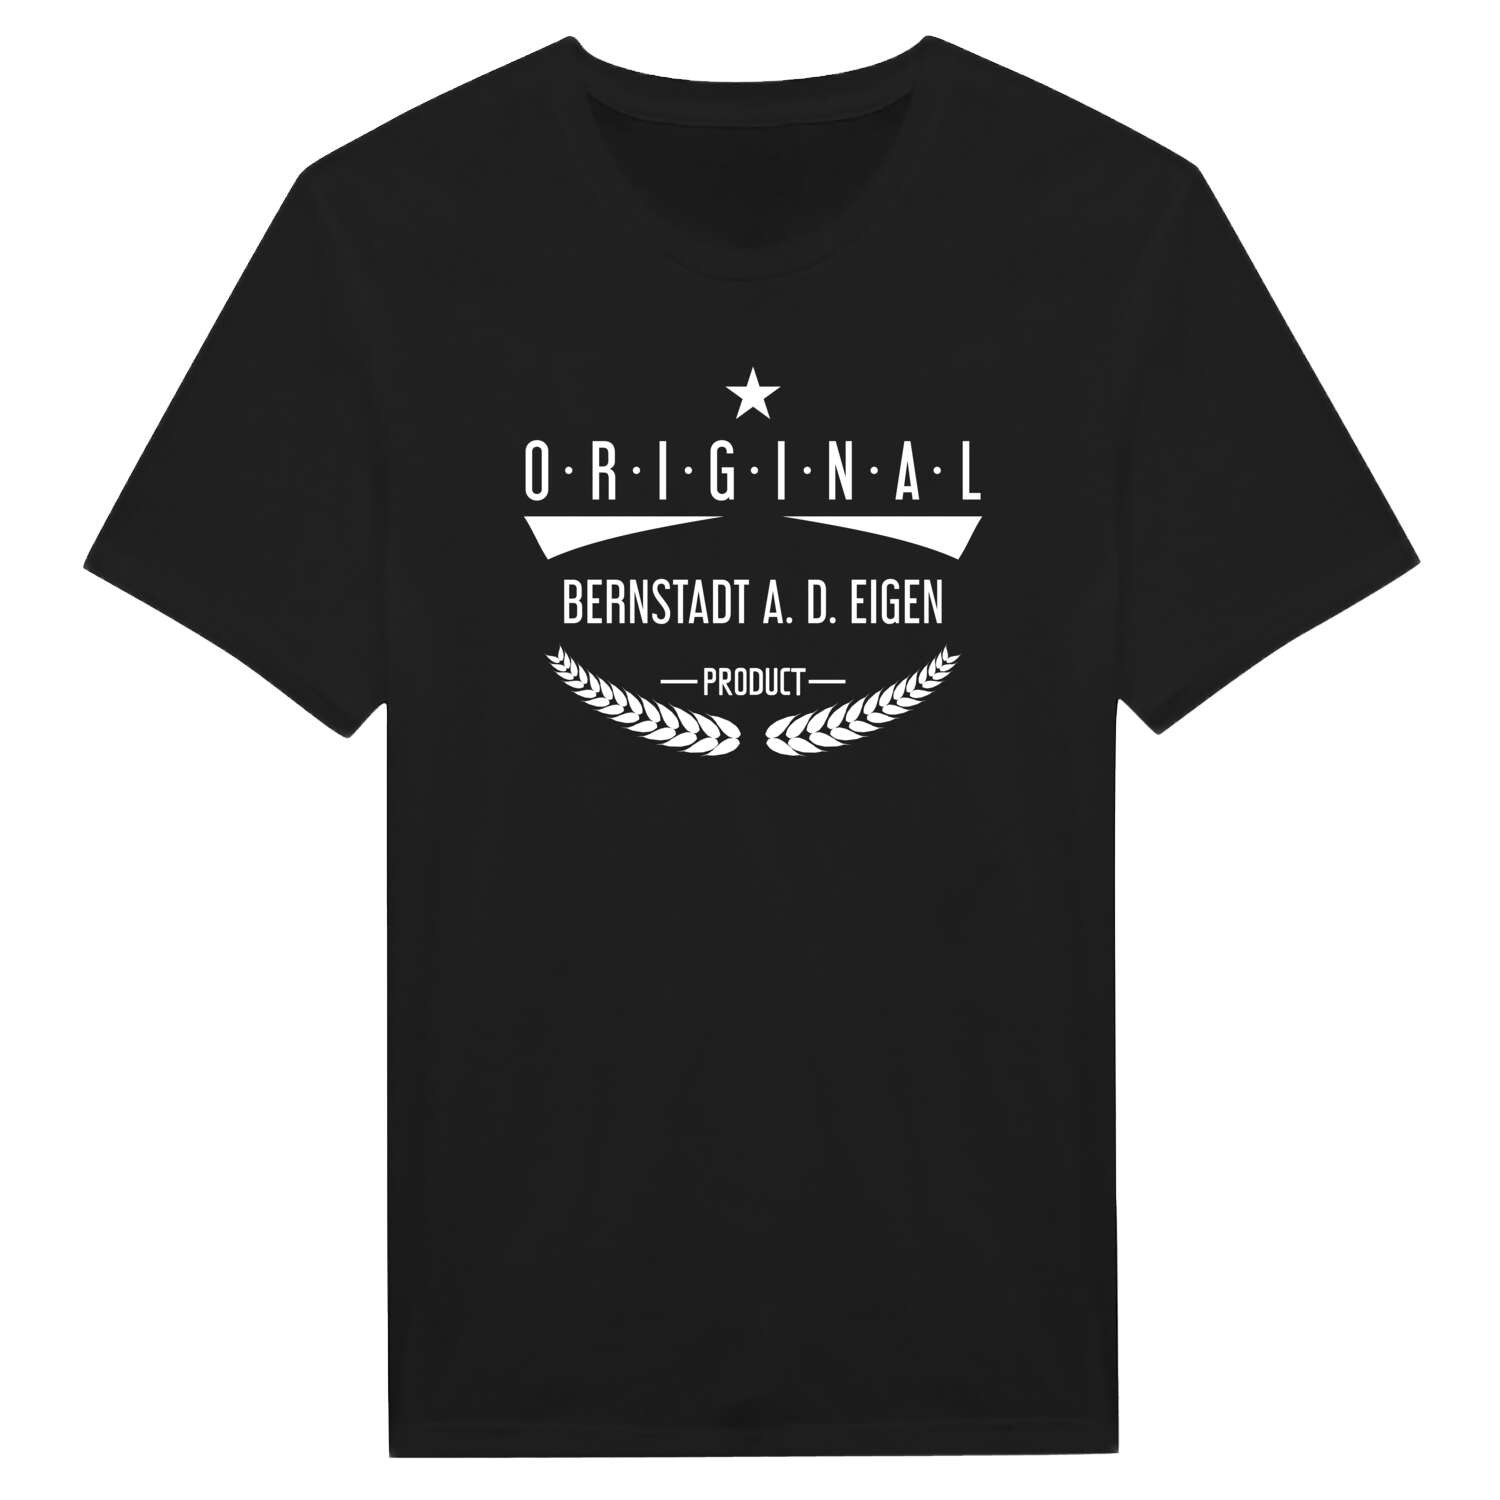 Bernstadt a. d. Eigen T-Shirt »Original Product«